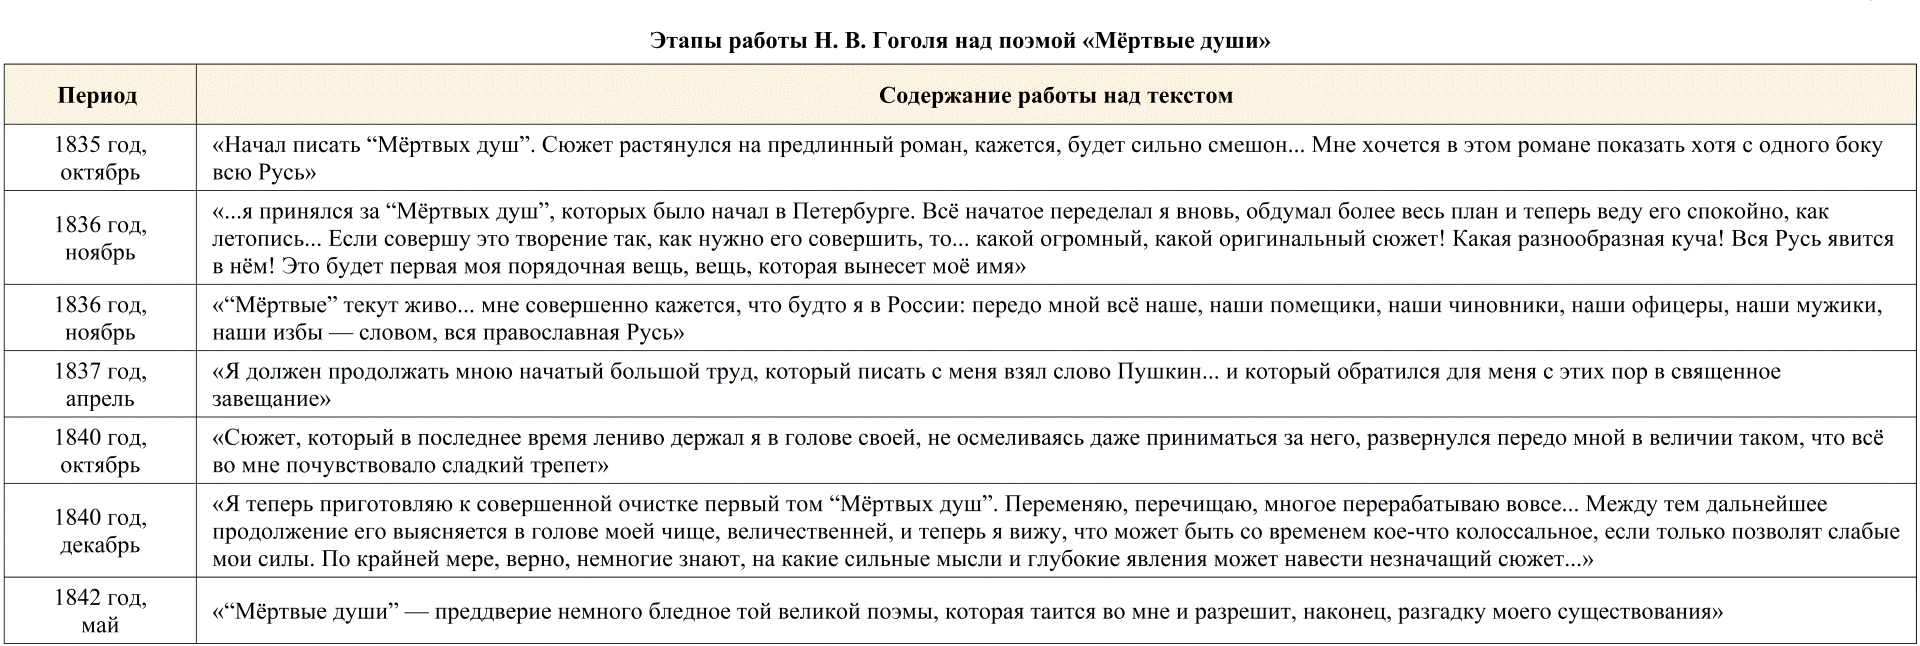 Сочинение: Образ Руси и русского народа в поэме Мертвые души